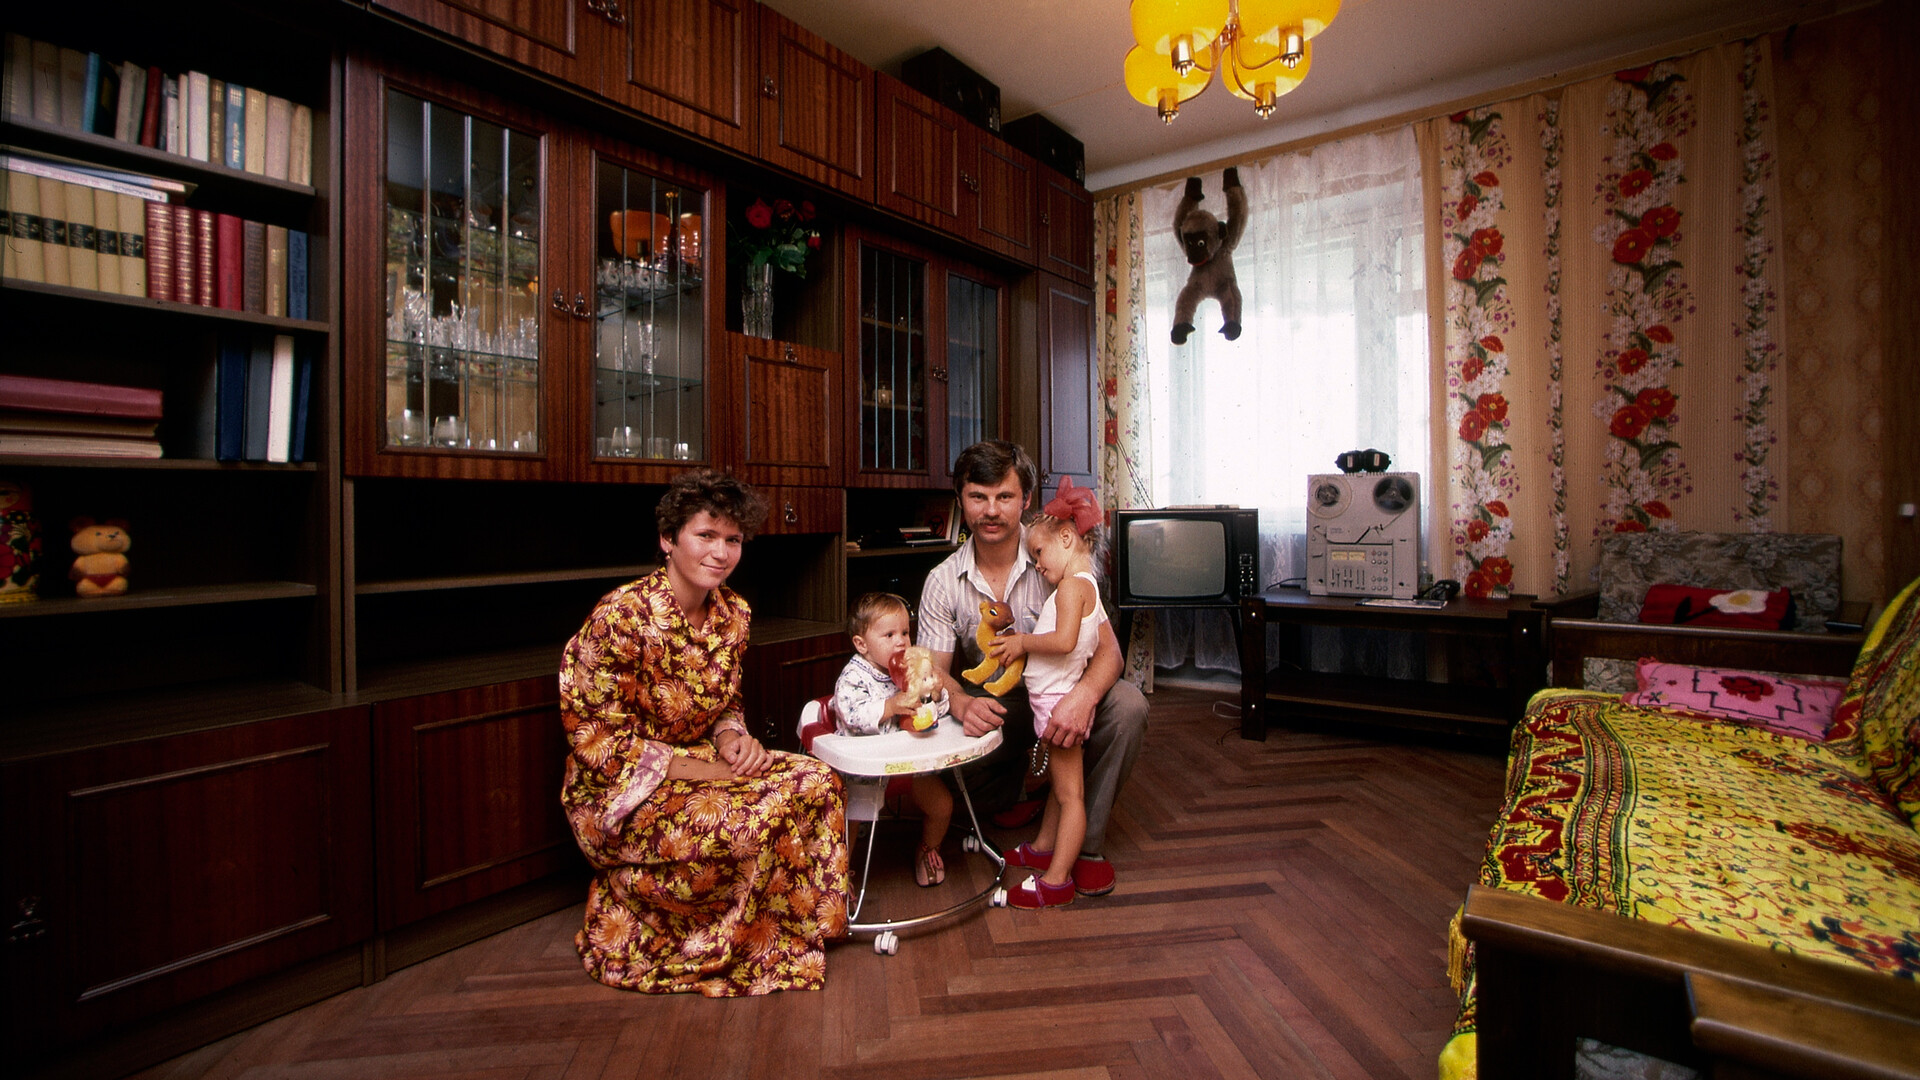 Appartamento di Mosca, 1987